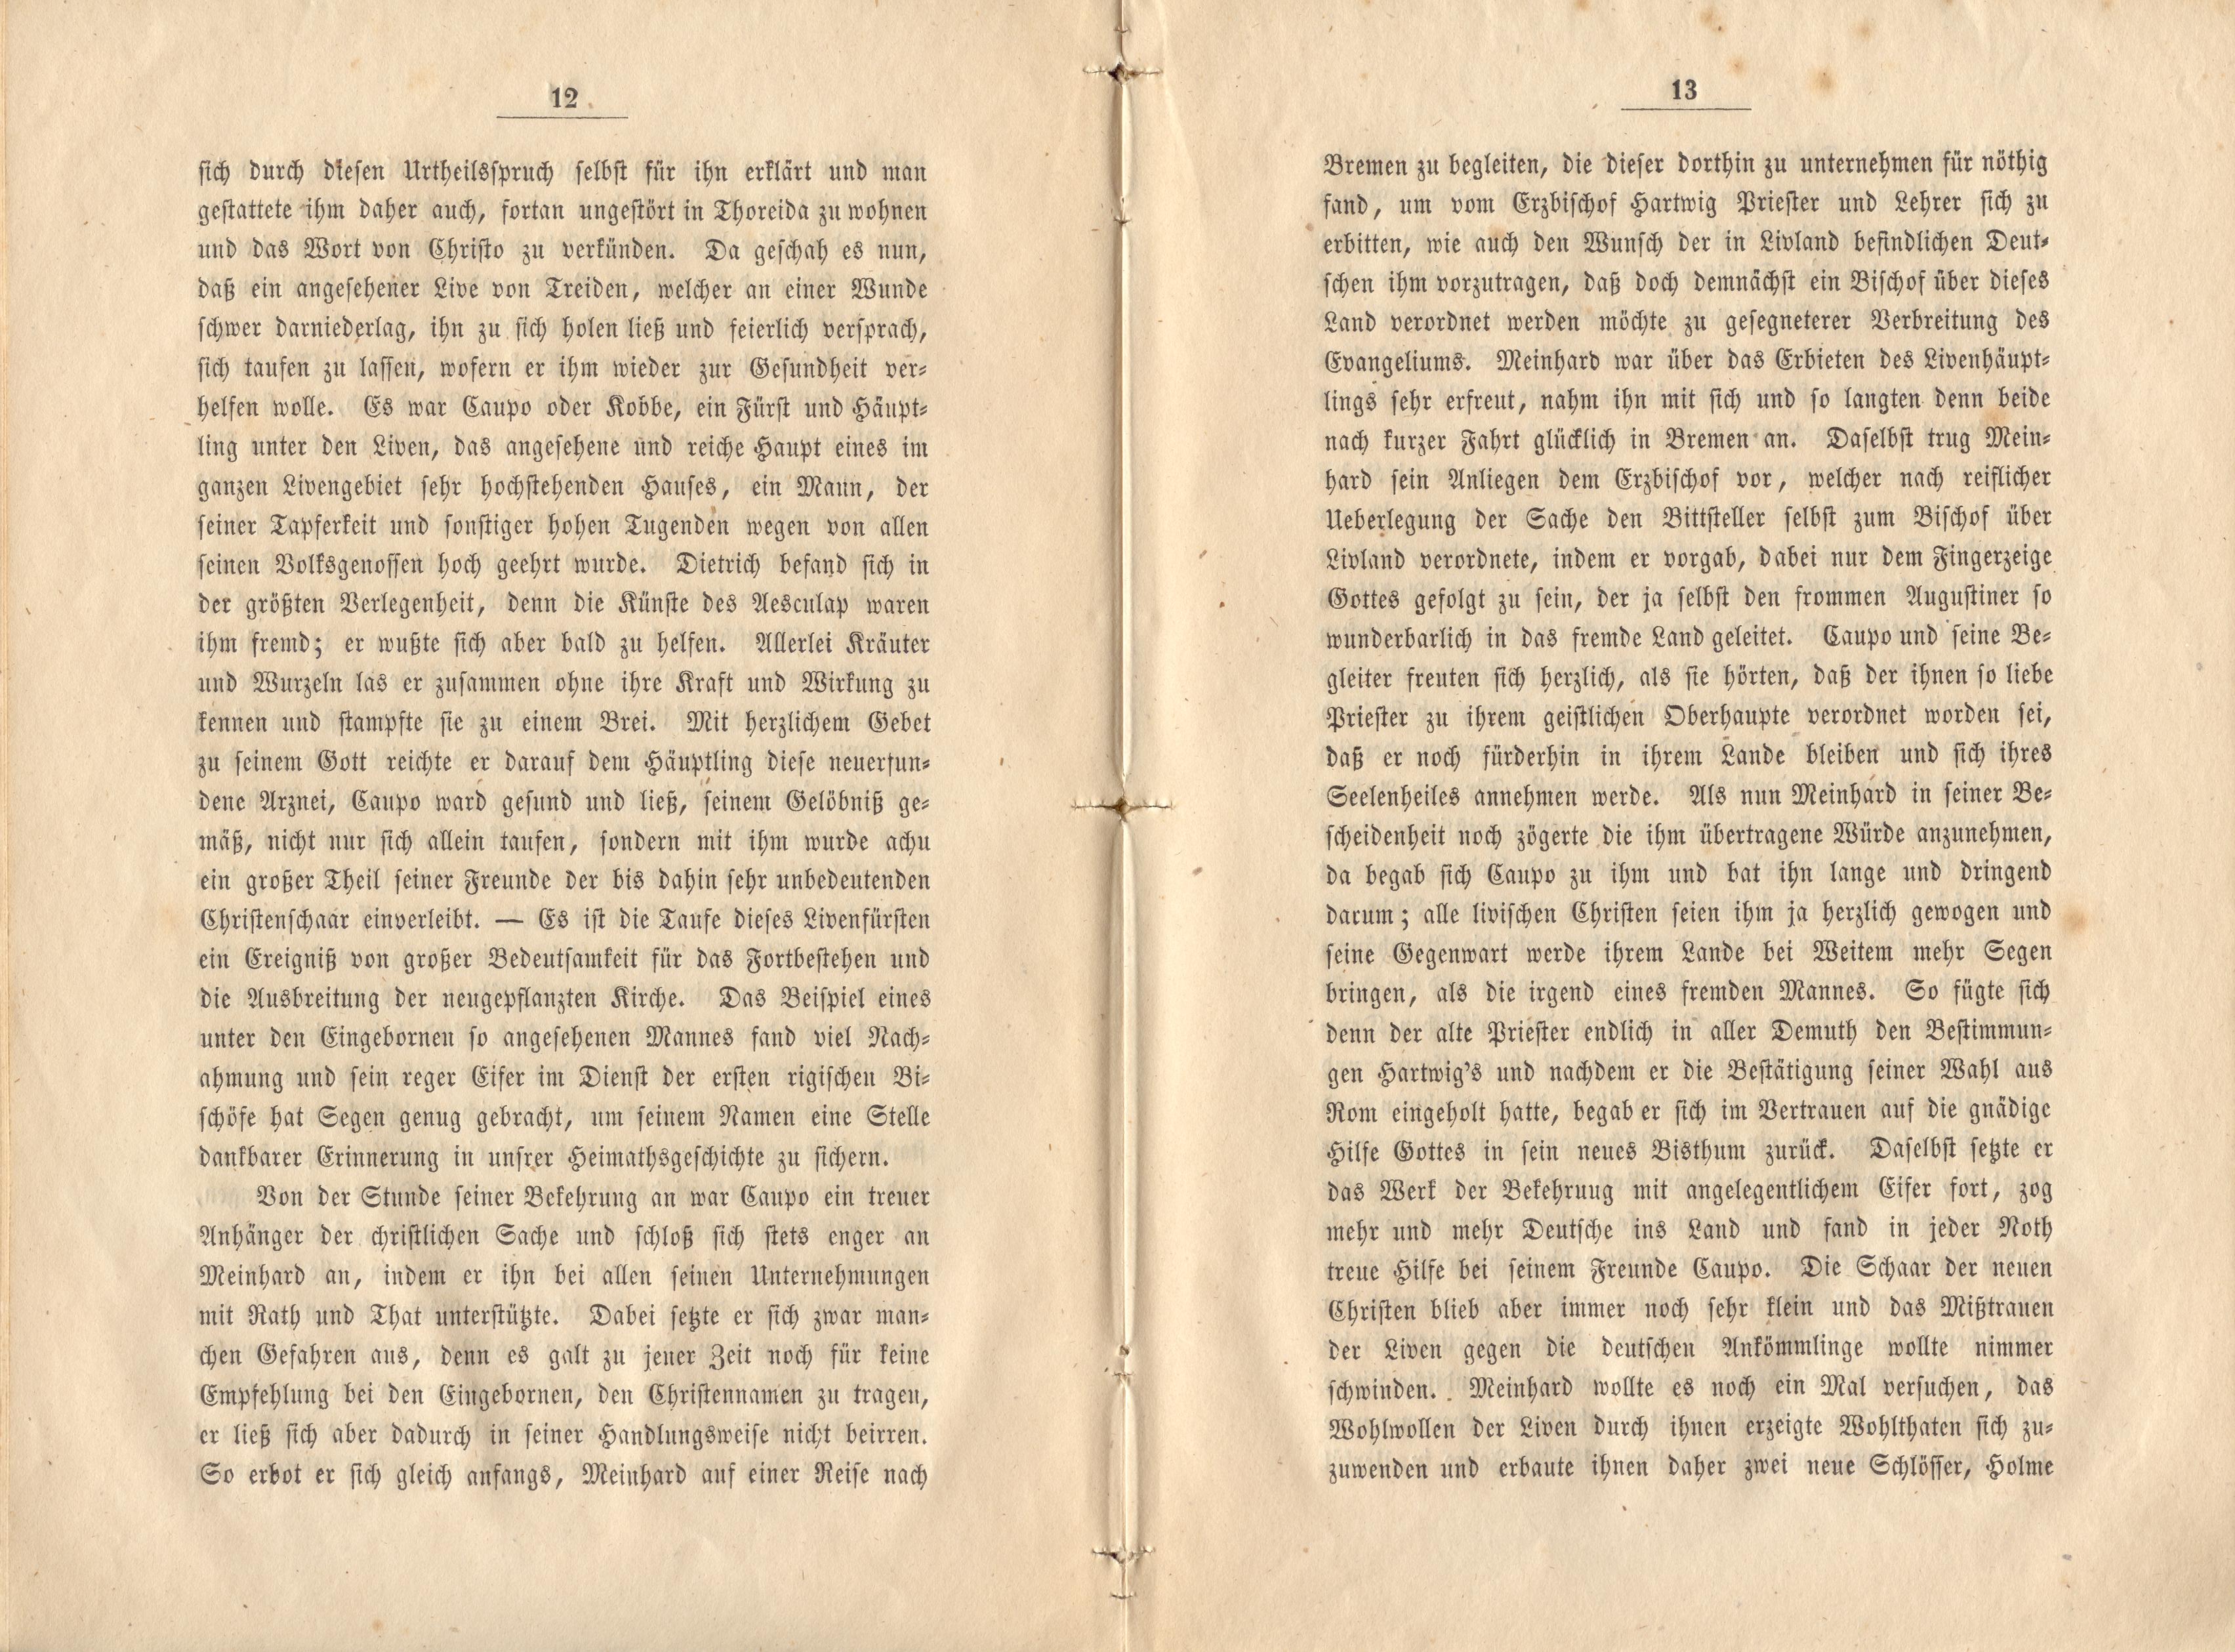 Felliner Blätter (1859) | 7. (12-13) Main body of text